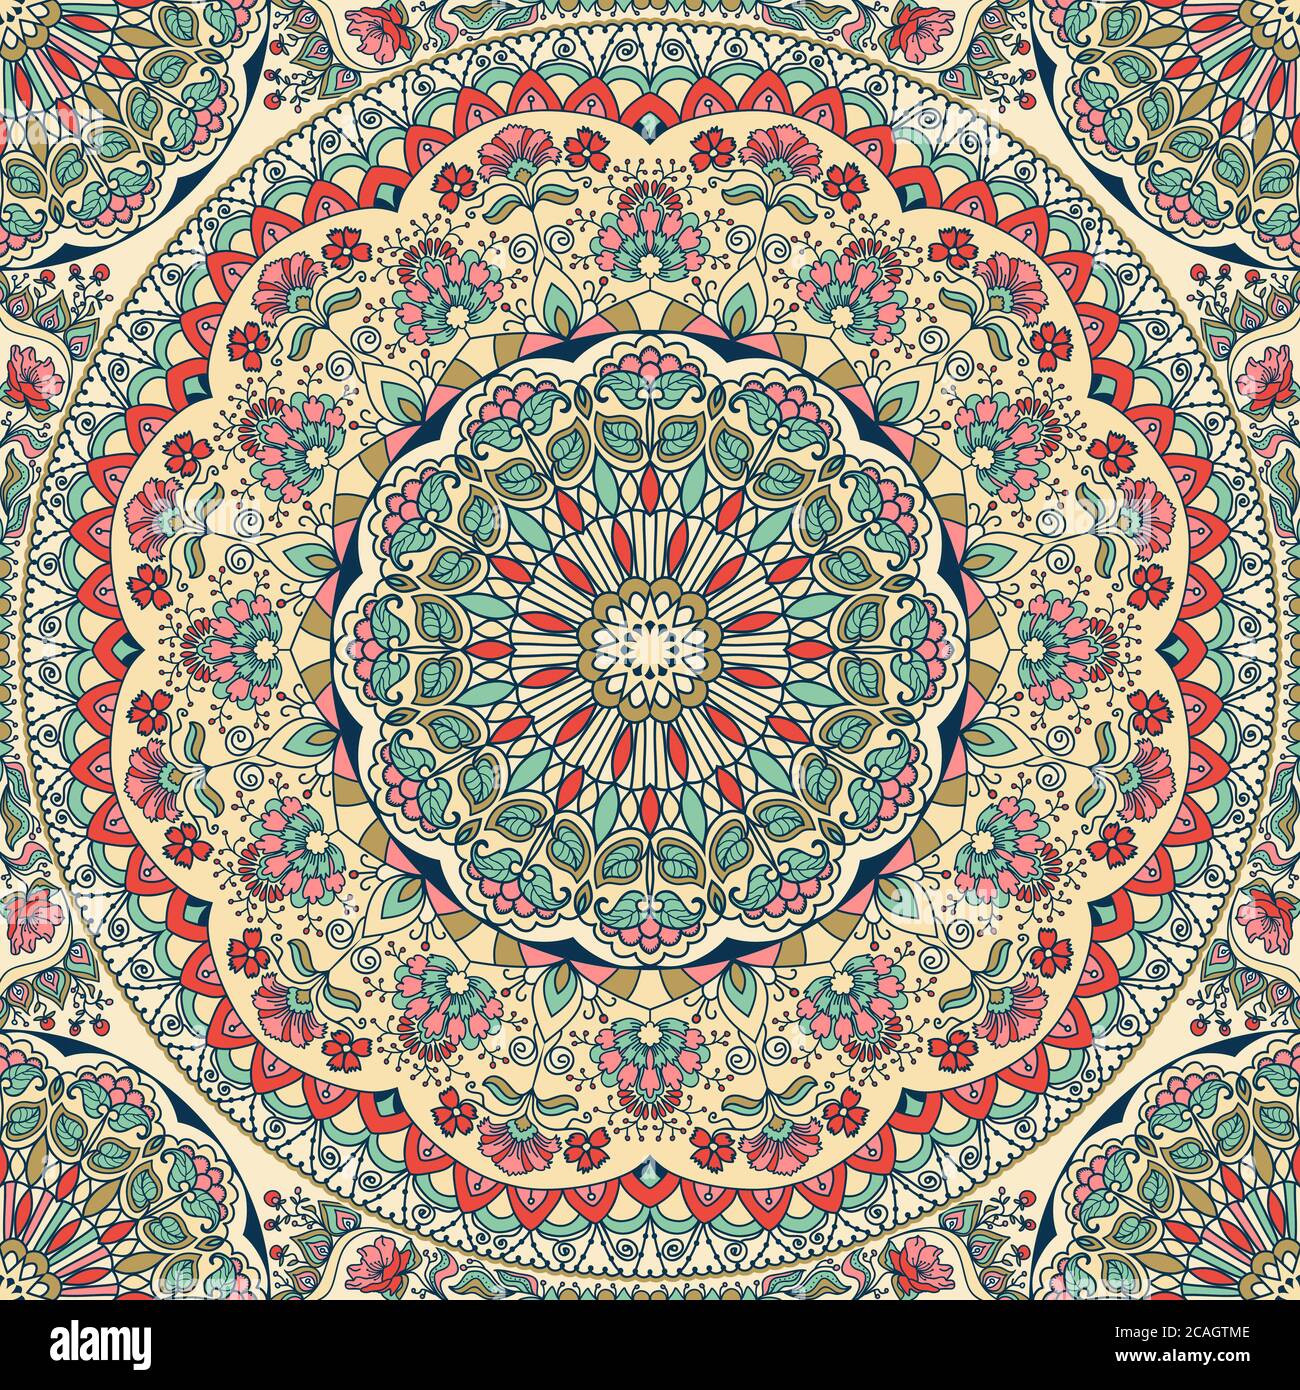 Nahtlose bunte florale handgezeichnete Muster mit Mandala. Kreis Ornament in Retro-Farben. Traditionelles orientalisches Muster. Stockfoto